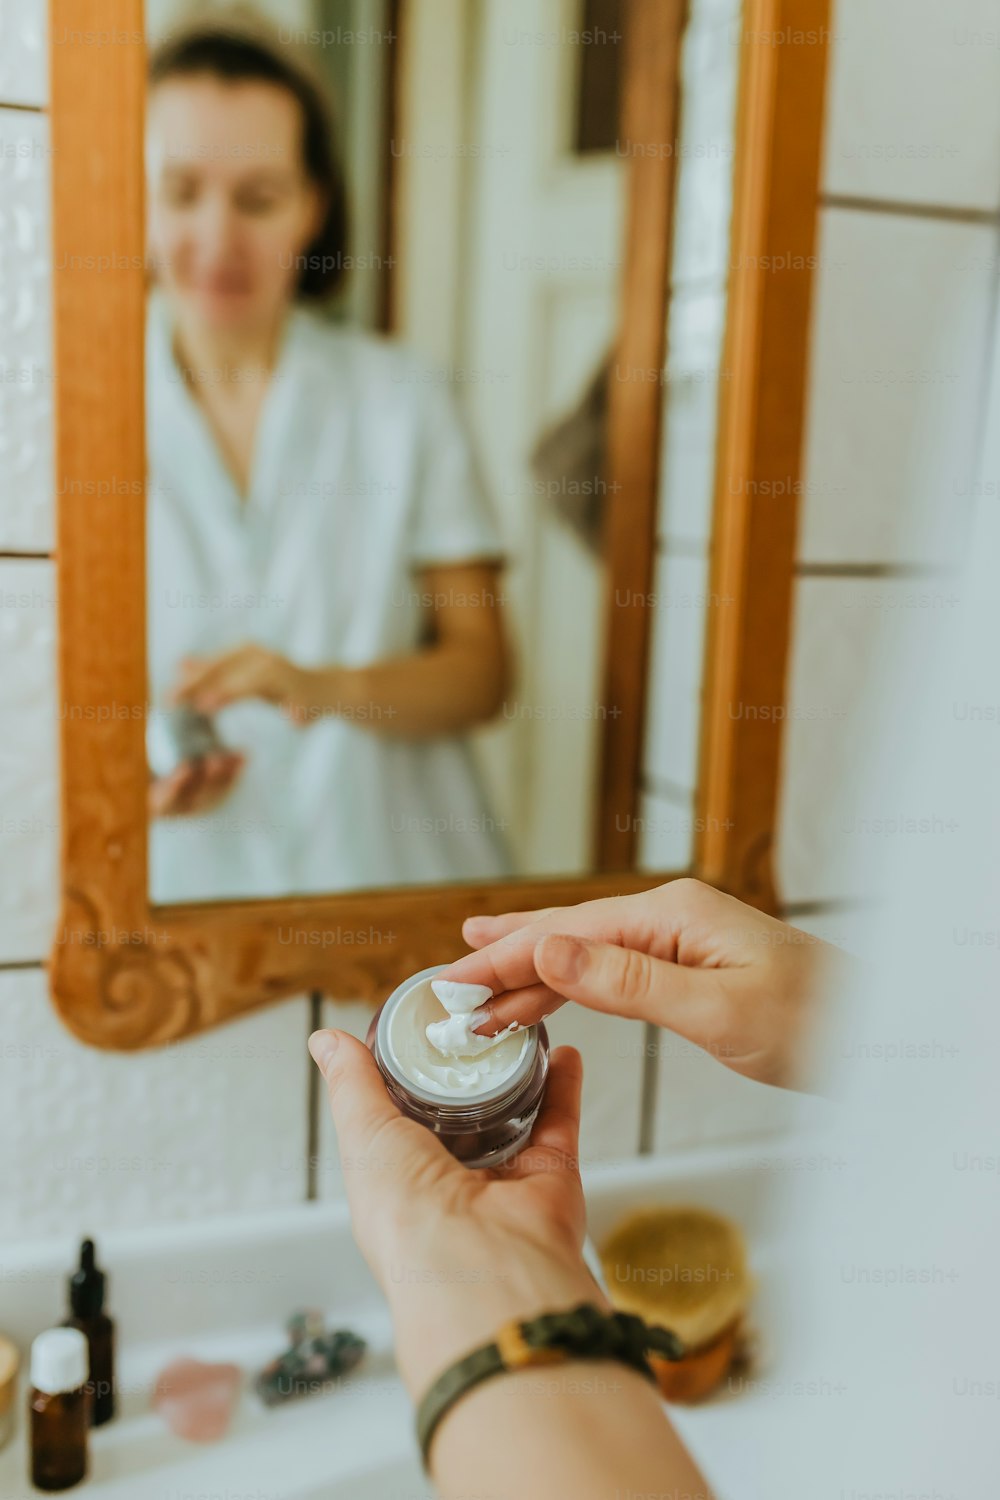 Una mujer sostiene un frasco de crema frente a un espejo